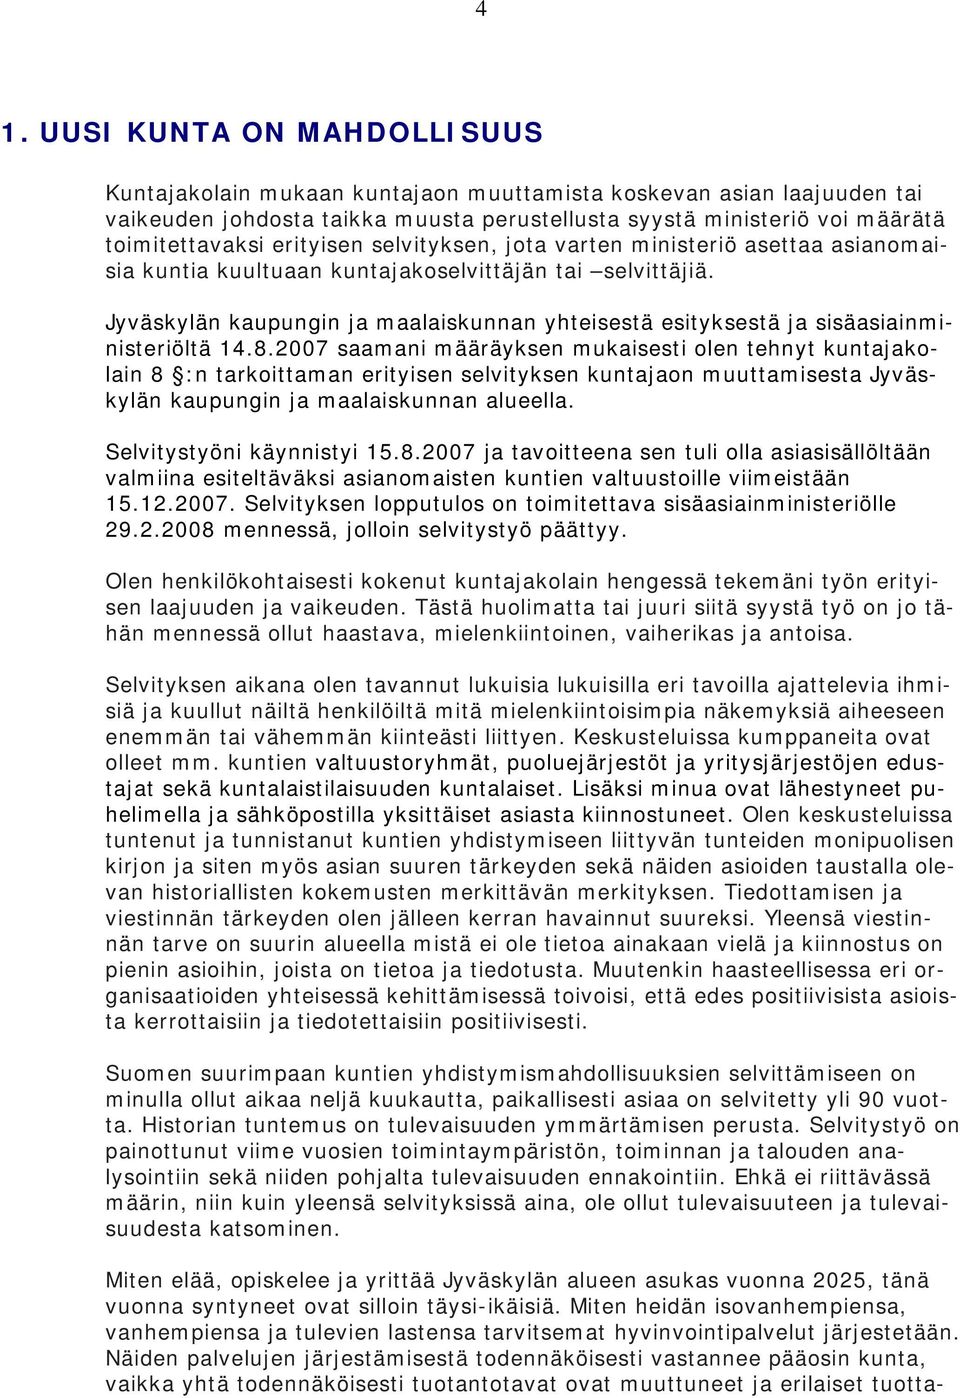 Jyväskylän kaupungin ja maalaiskunnan yhteisestä esityksestä ja sisäasiainministeriöltä 14.8.